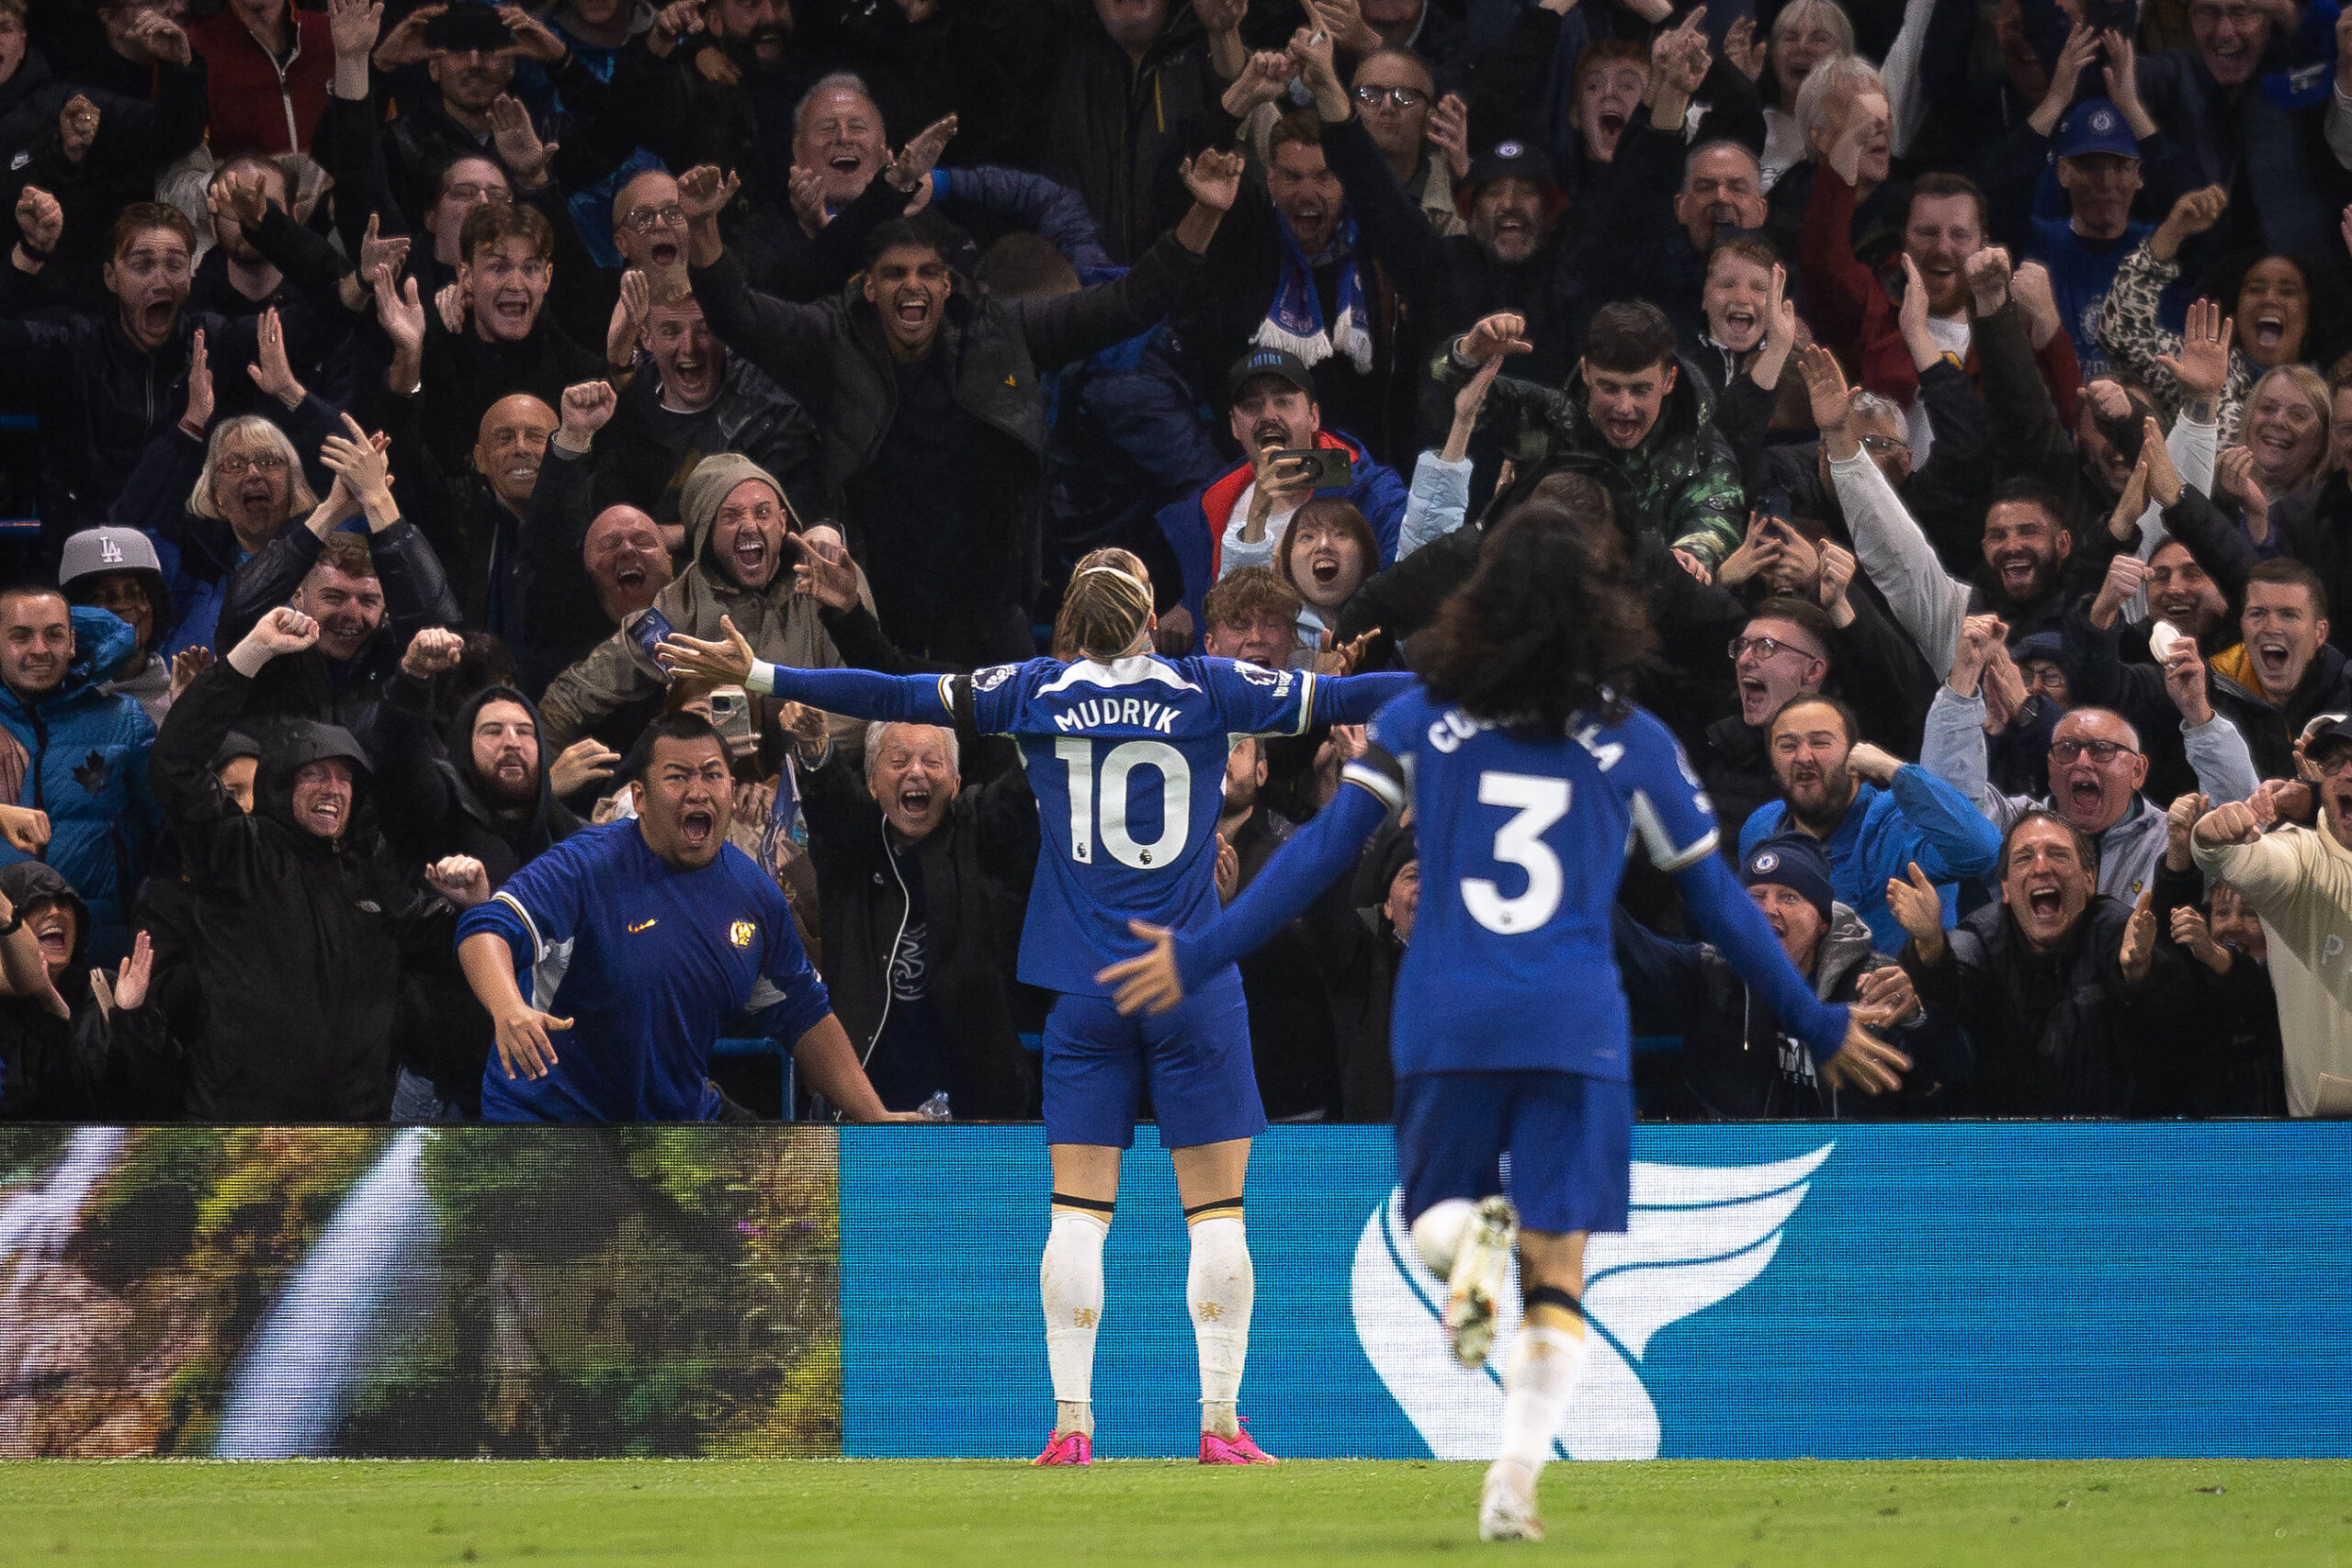 Mykhailo Mudryk celebrates goal in front of Chelsea fans